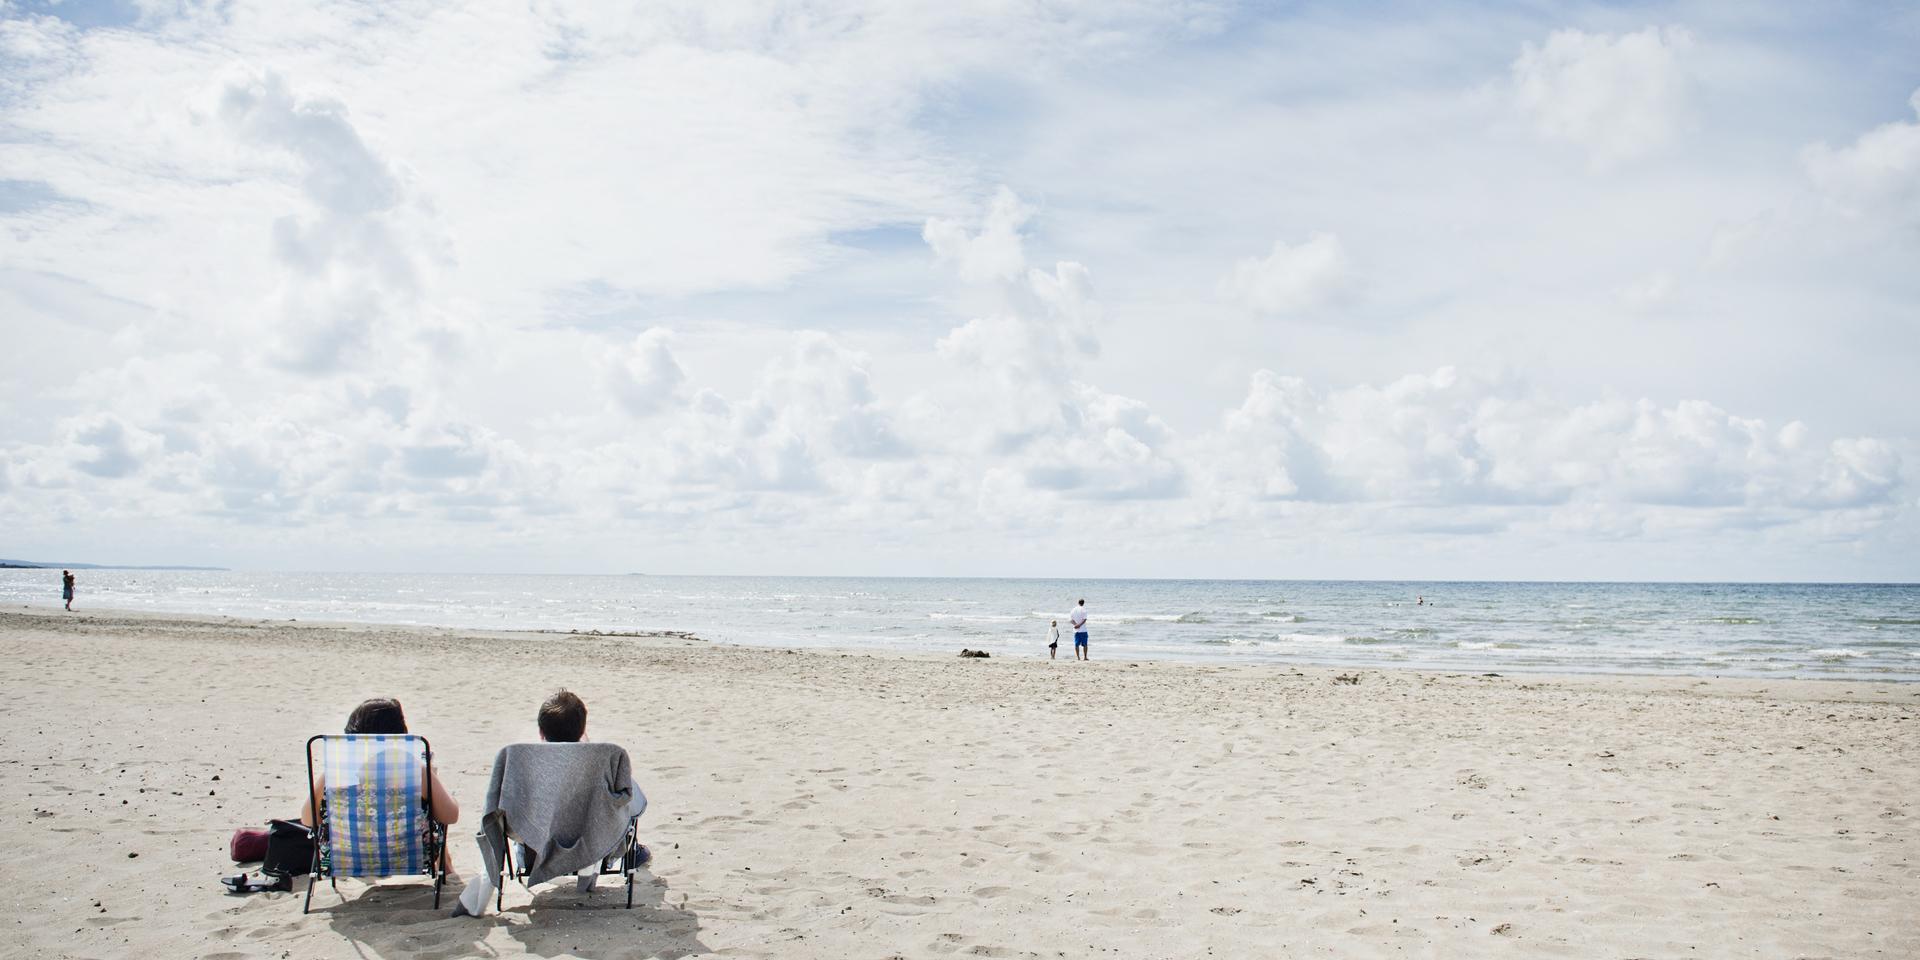 En alldeles egen strand vore förstås drömmen i sommar. Insändarskribenten har ett tips för hur man kan förhindra trängsel.